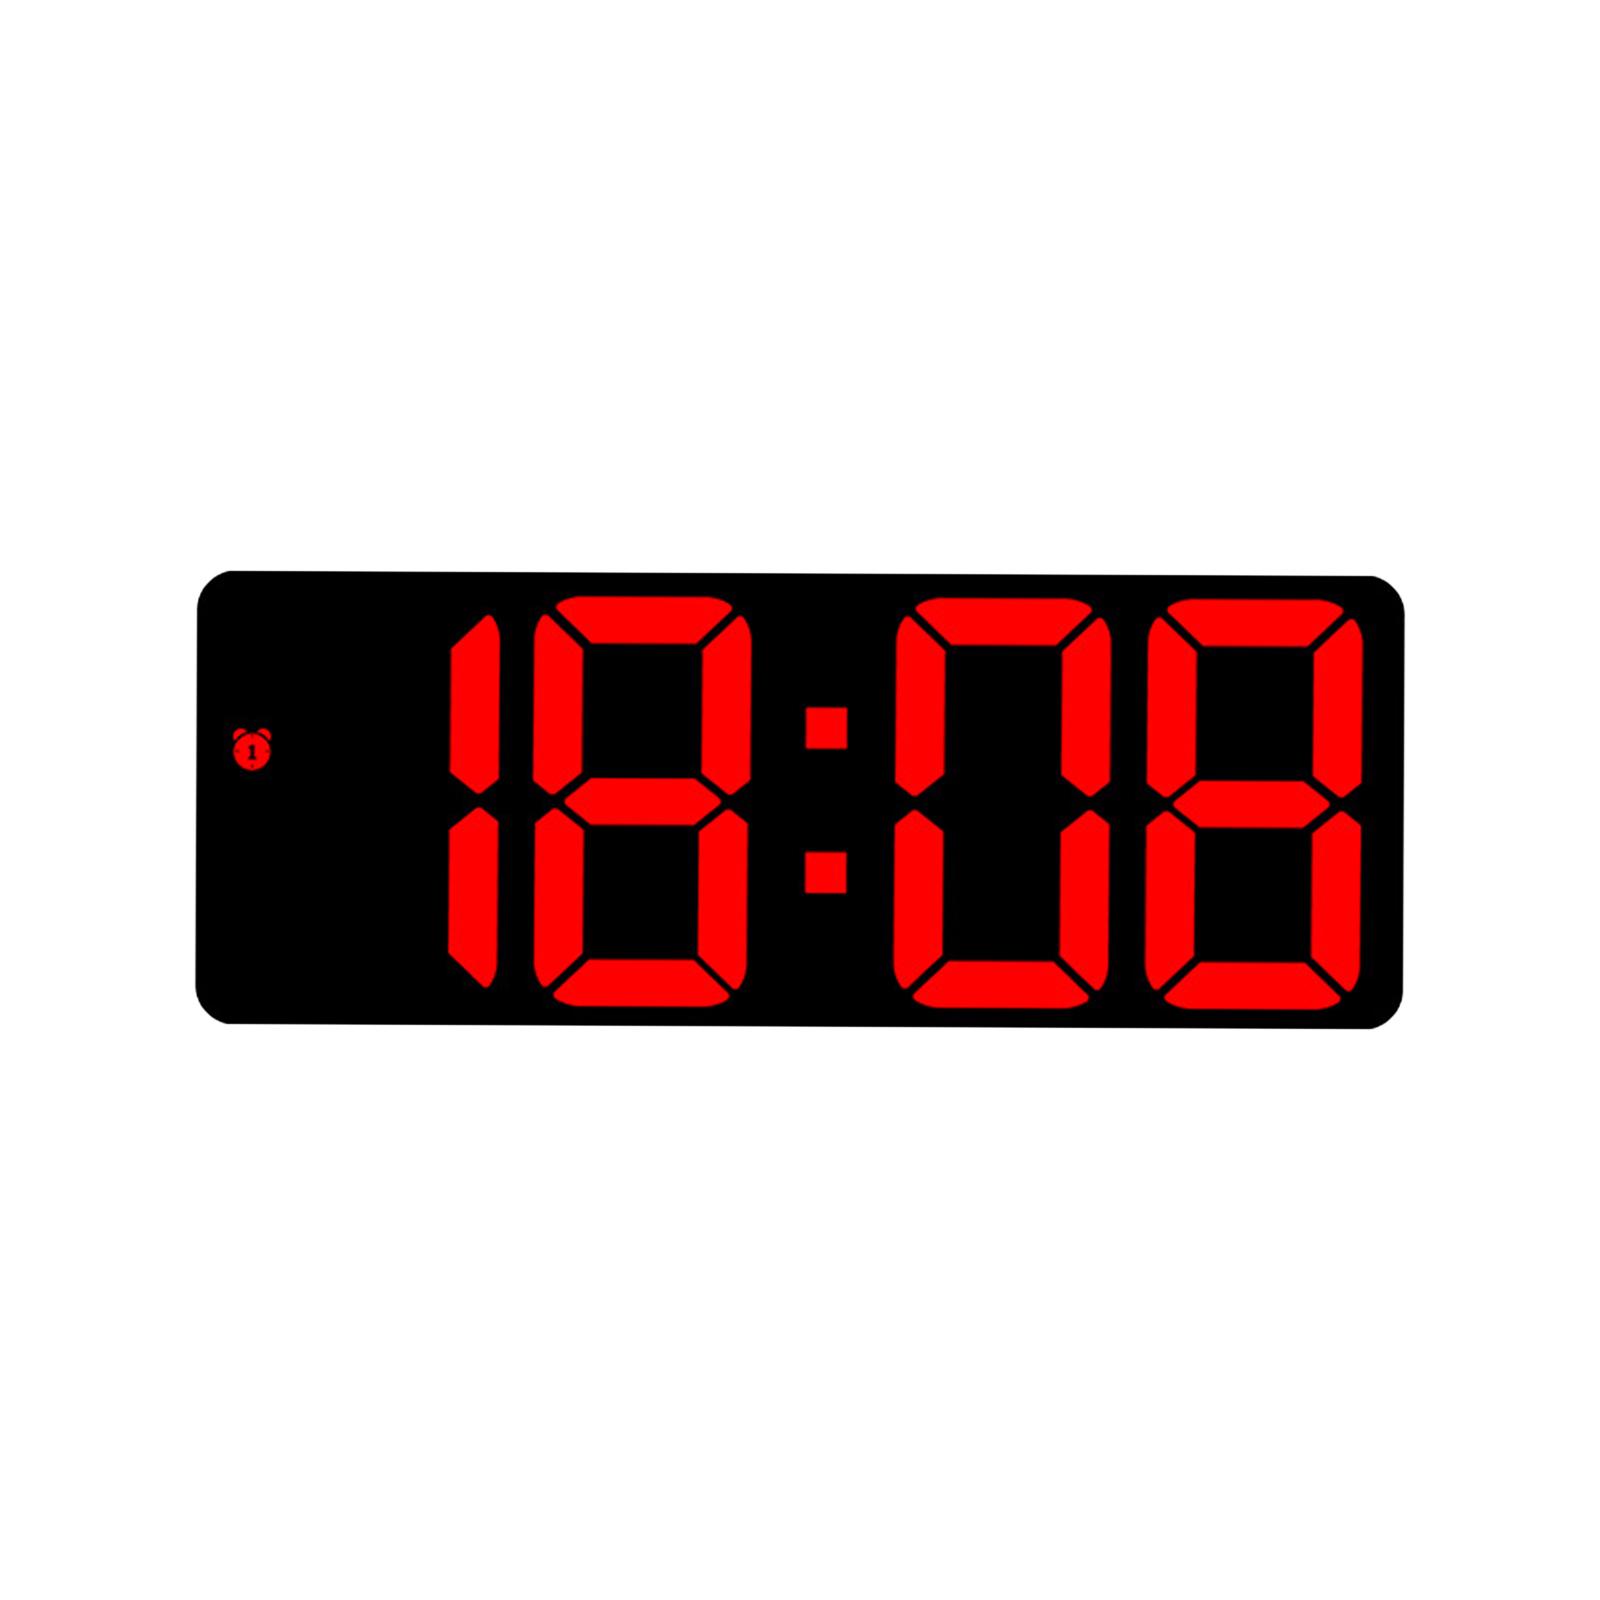 Digital Wall Clock Desk LED Desktop Alarm Clock for Living Room Adult Office Red